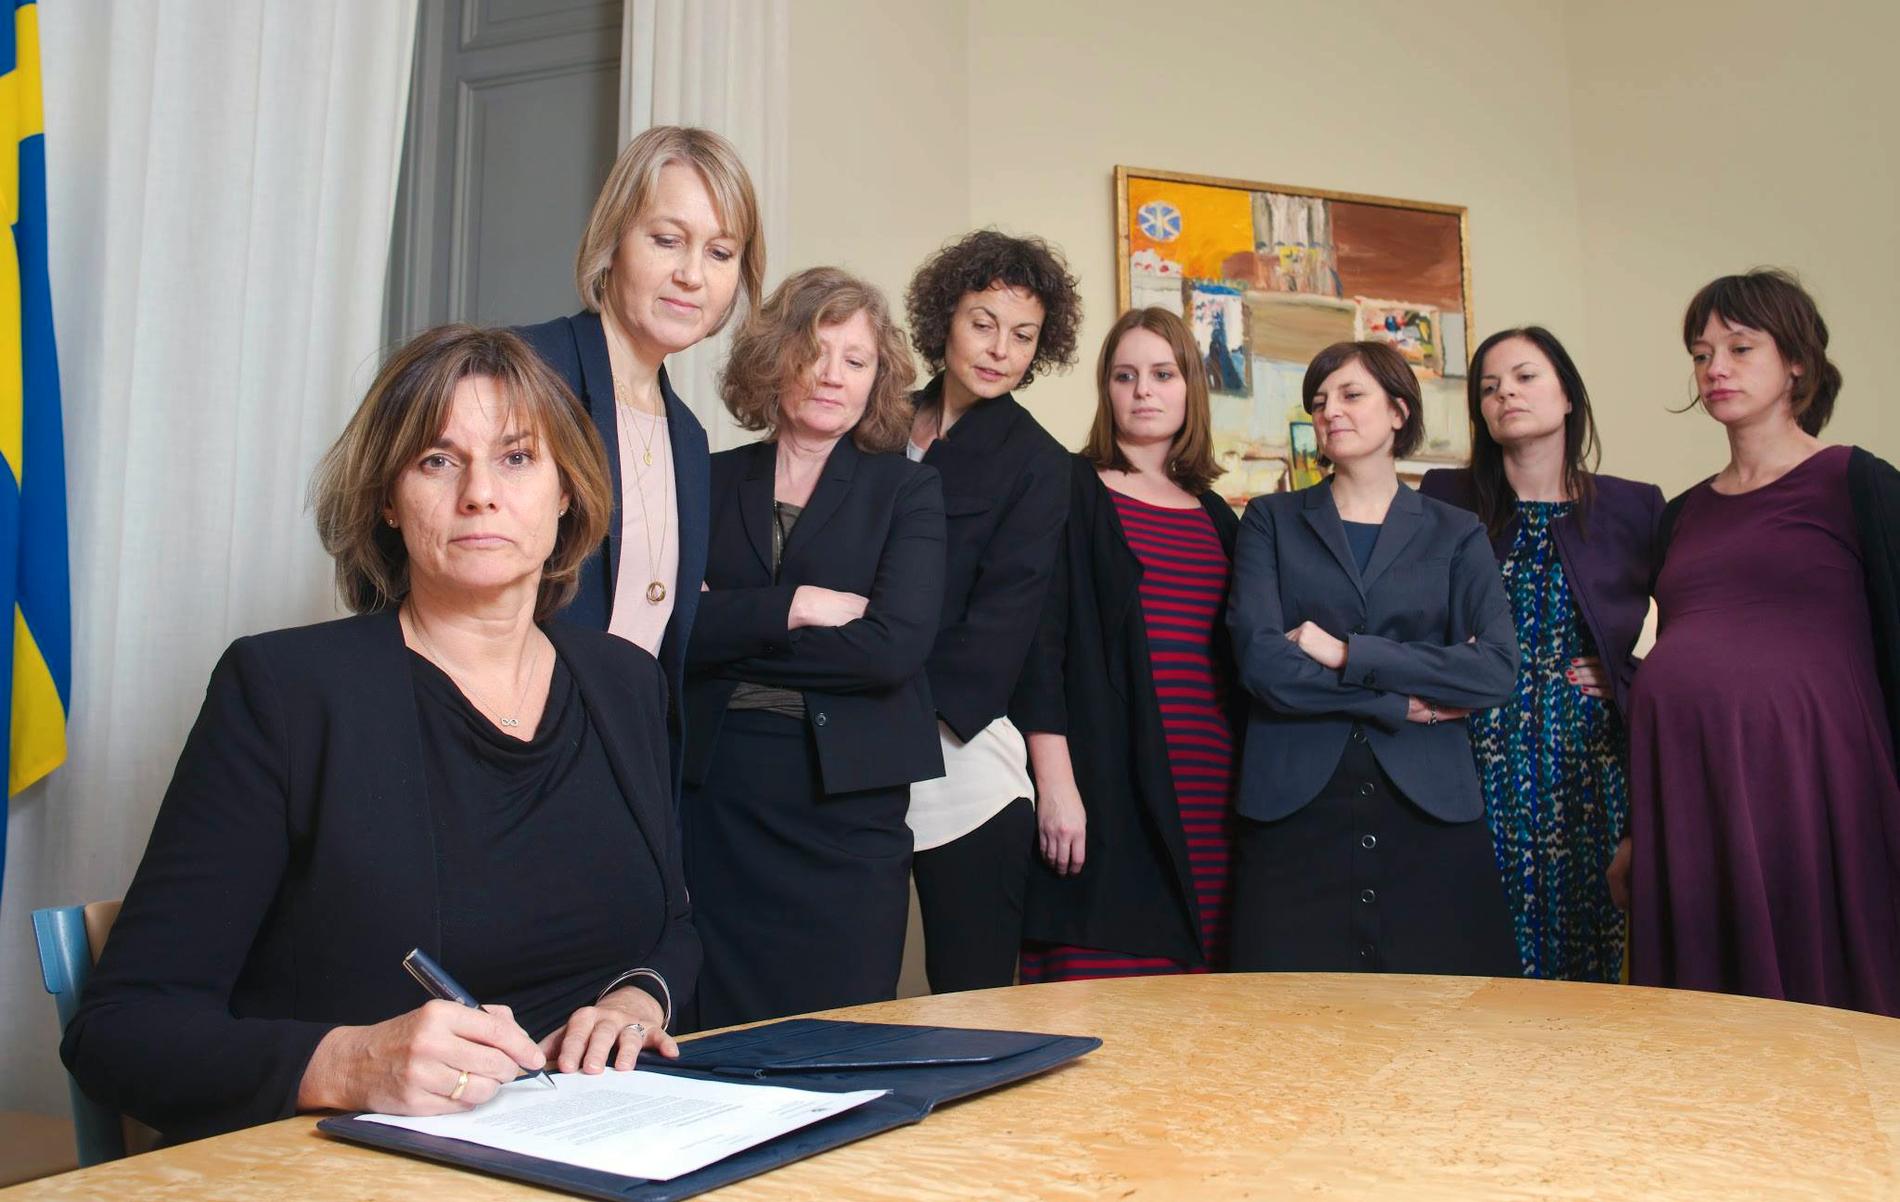 Isabella Lövin (MP) skriver på ny klimatlag omgiven av sju kvinnor.